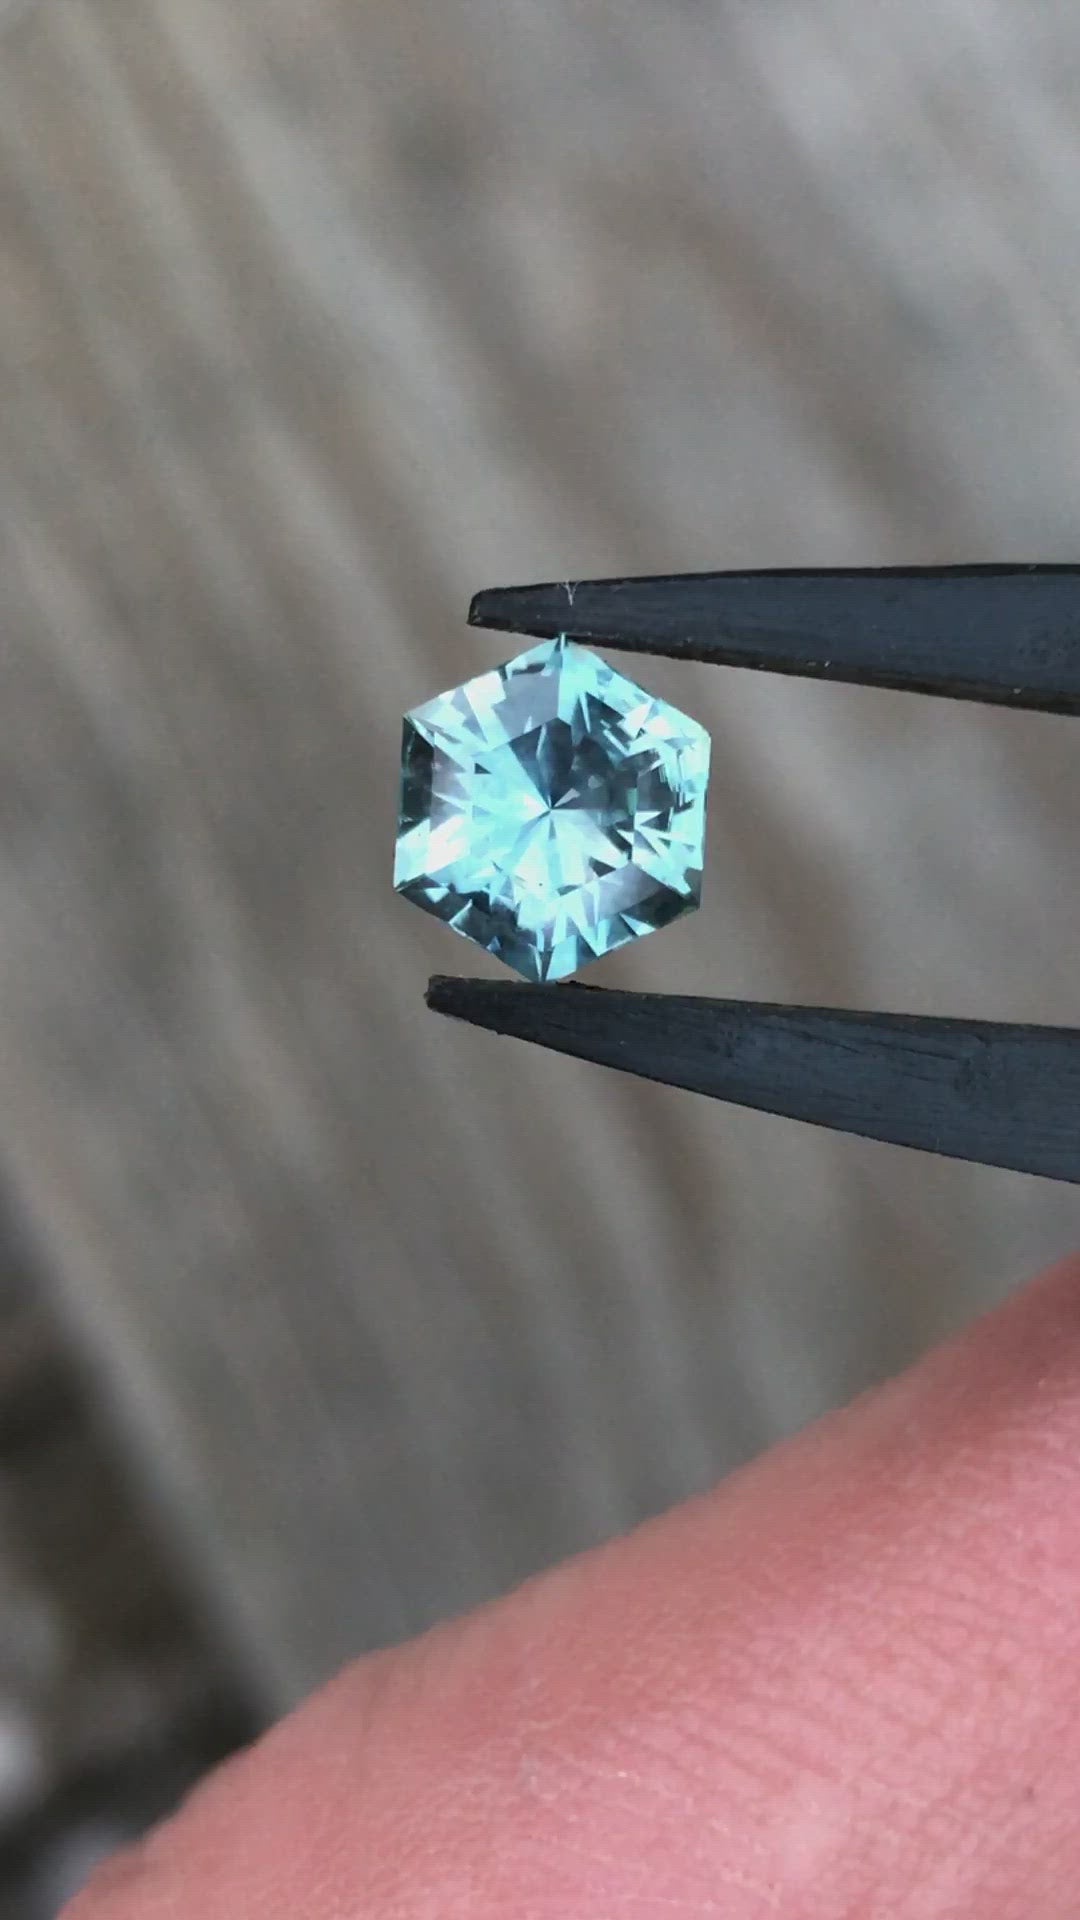 Montana Sapphire Hexagon 7.8x6.7mm, 1.66 Carats - Blue Green - Precision Cut